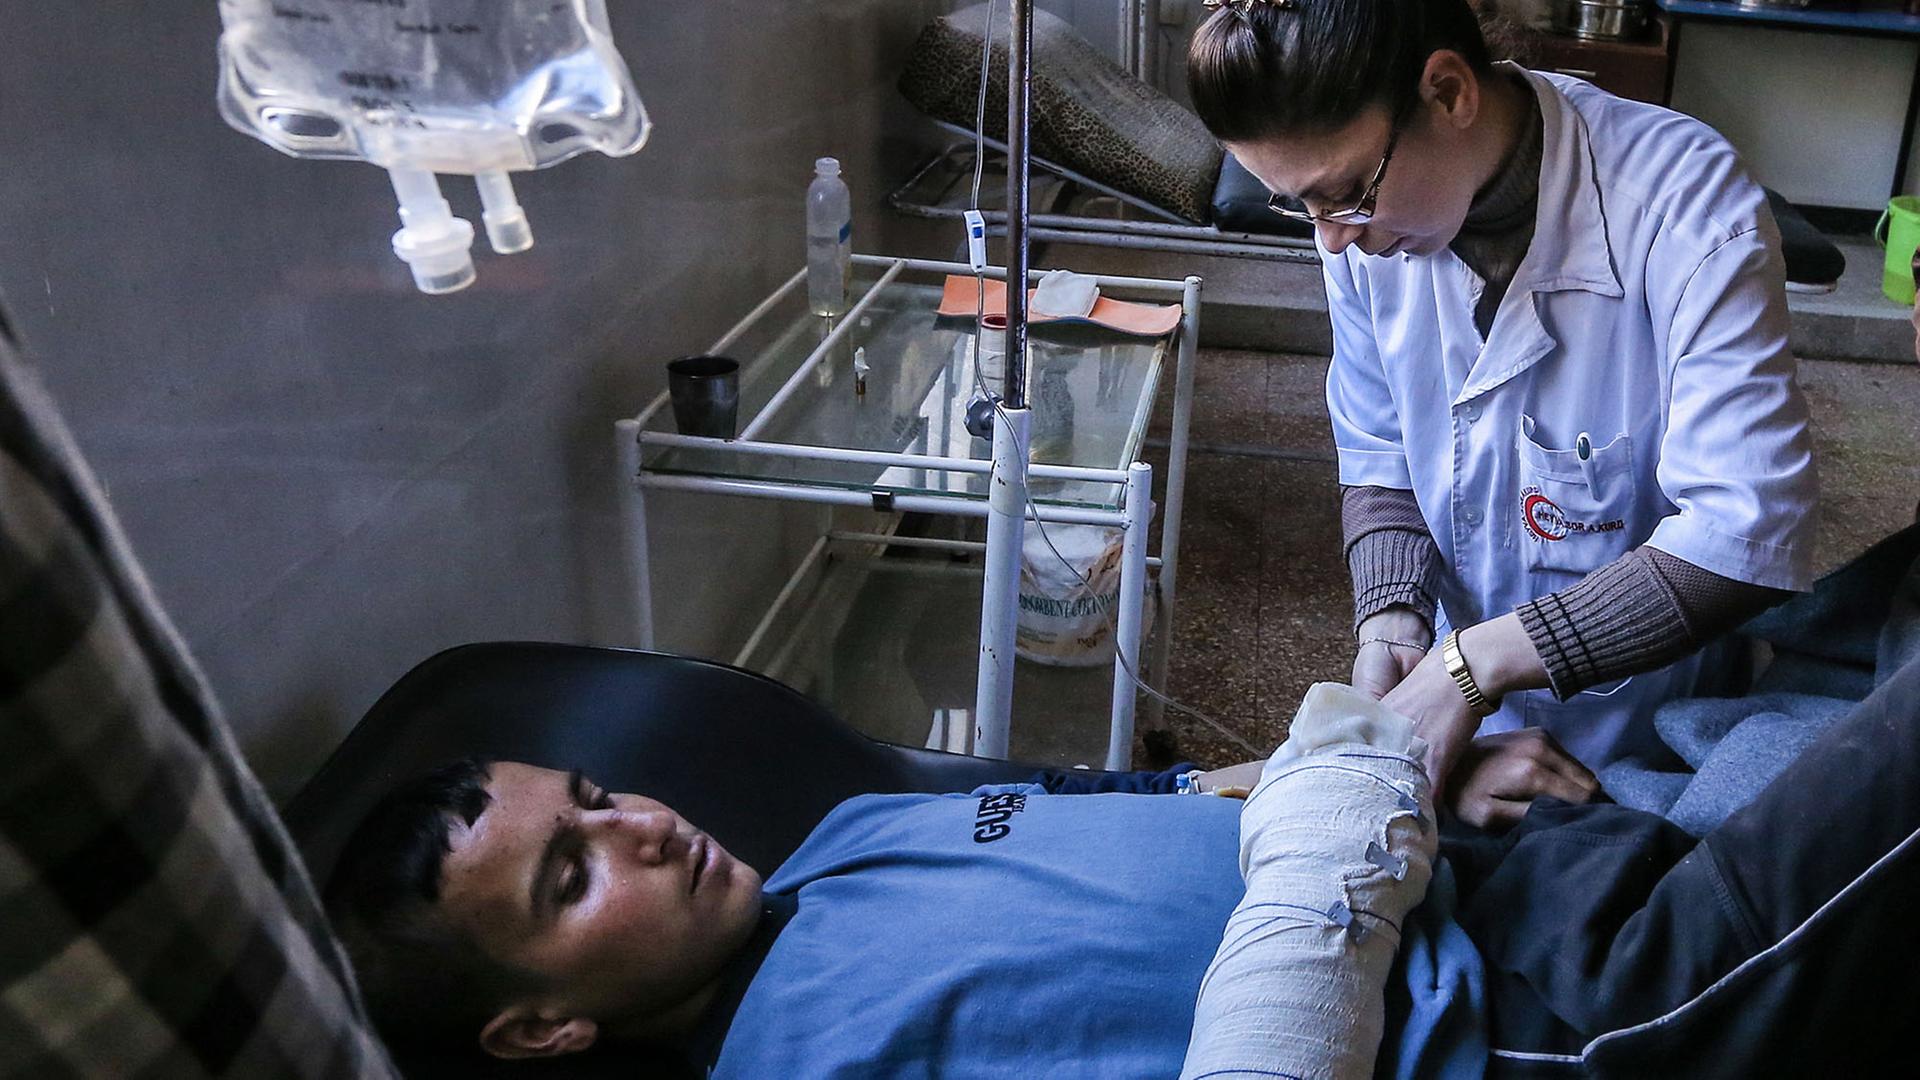 Medizinische Behandlung eines Verwundeten im syrischen Aleppo am 7. März 2016